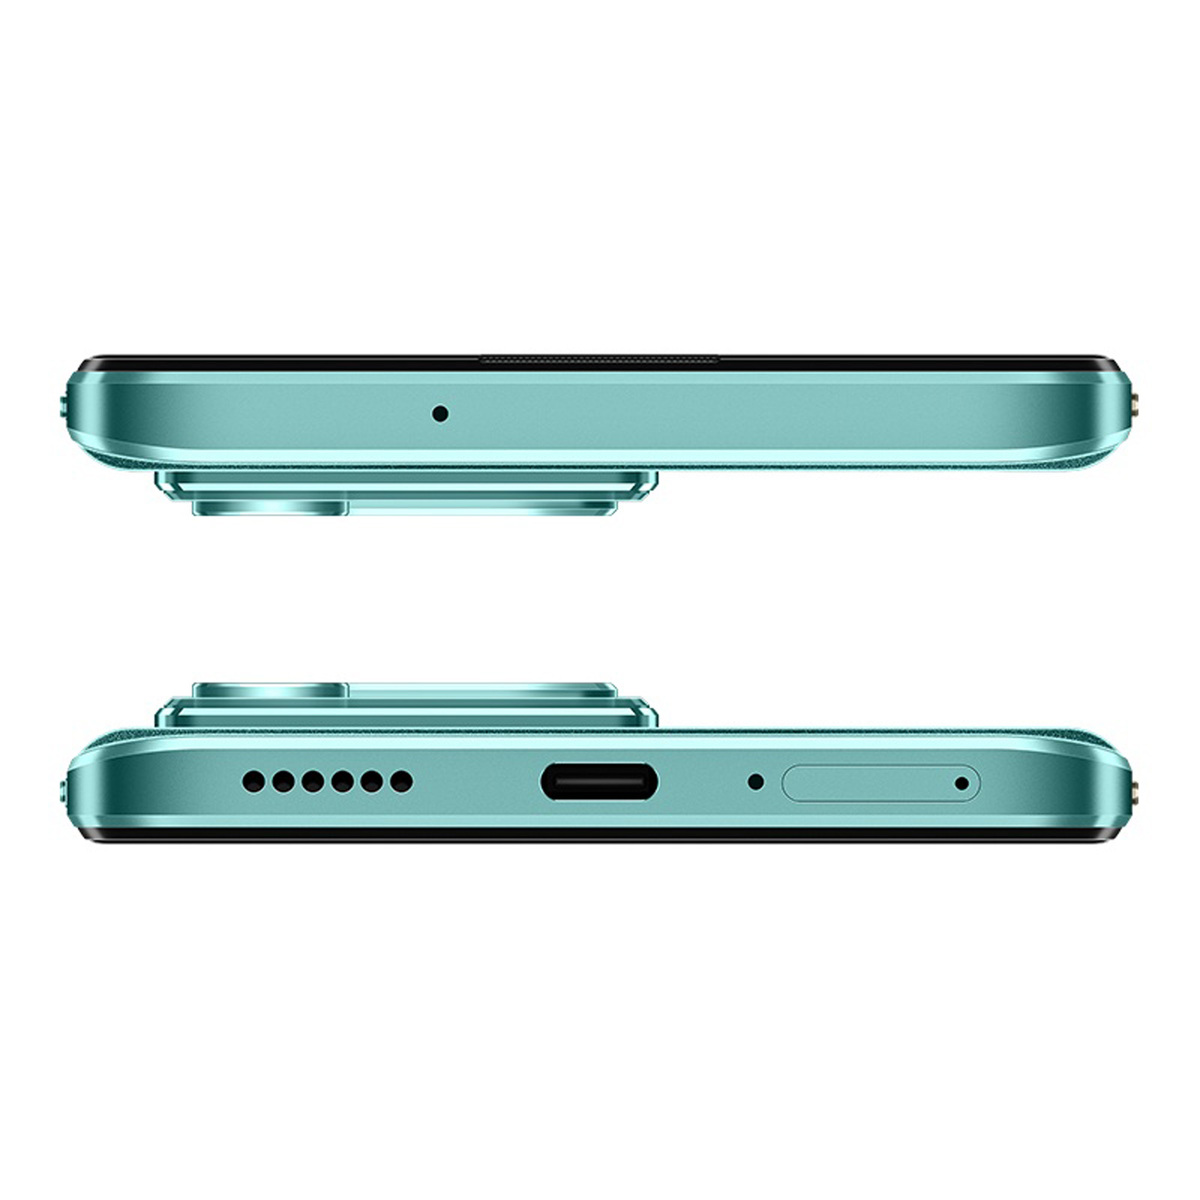 Huawei Nova Y72 4G Smartphone, 8 GB RAM, 128 GB Storage, Green